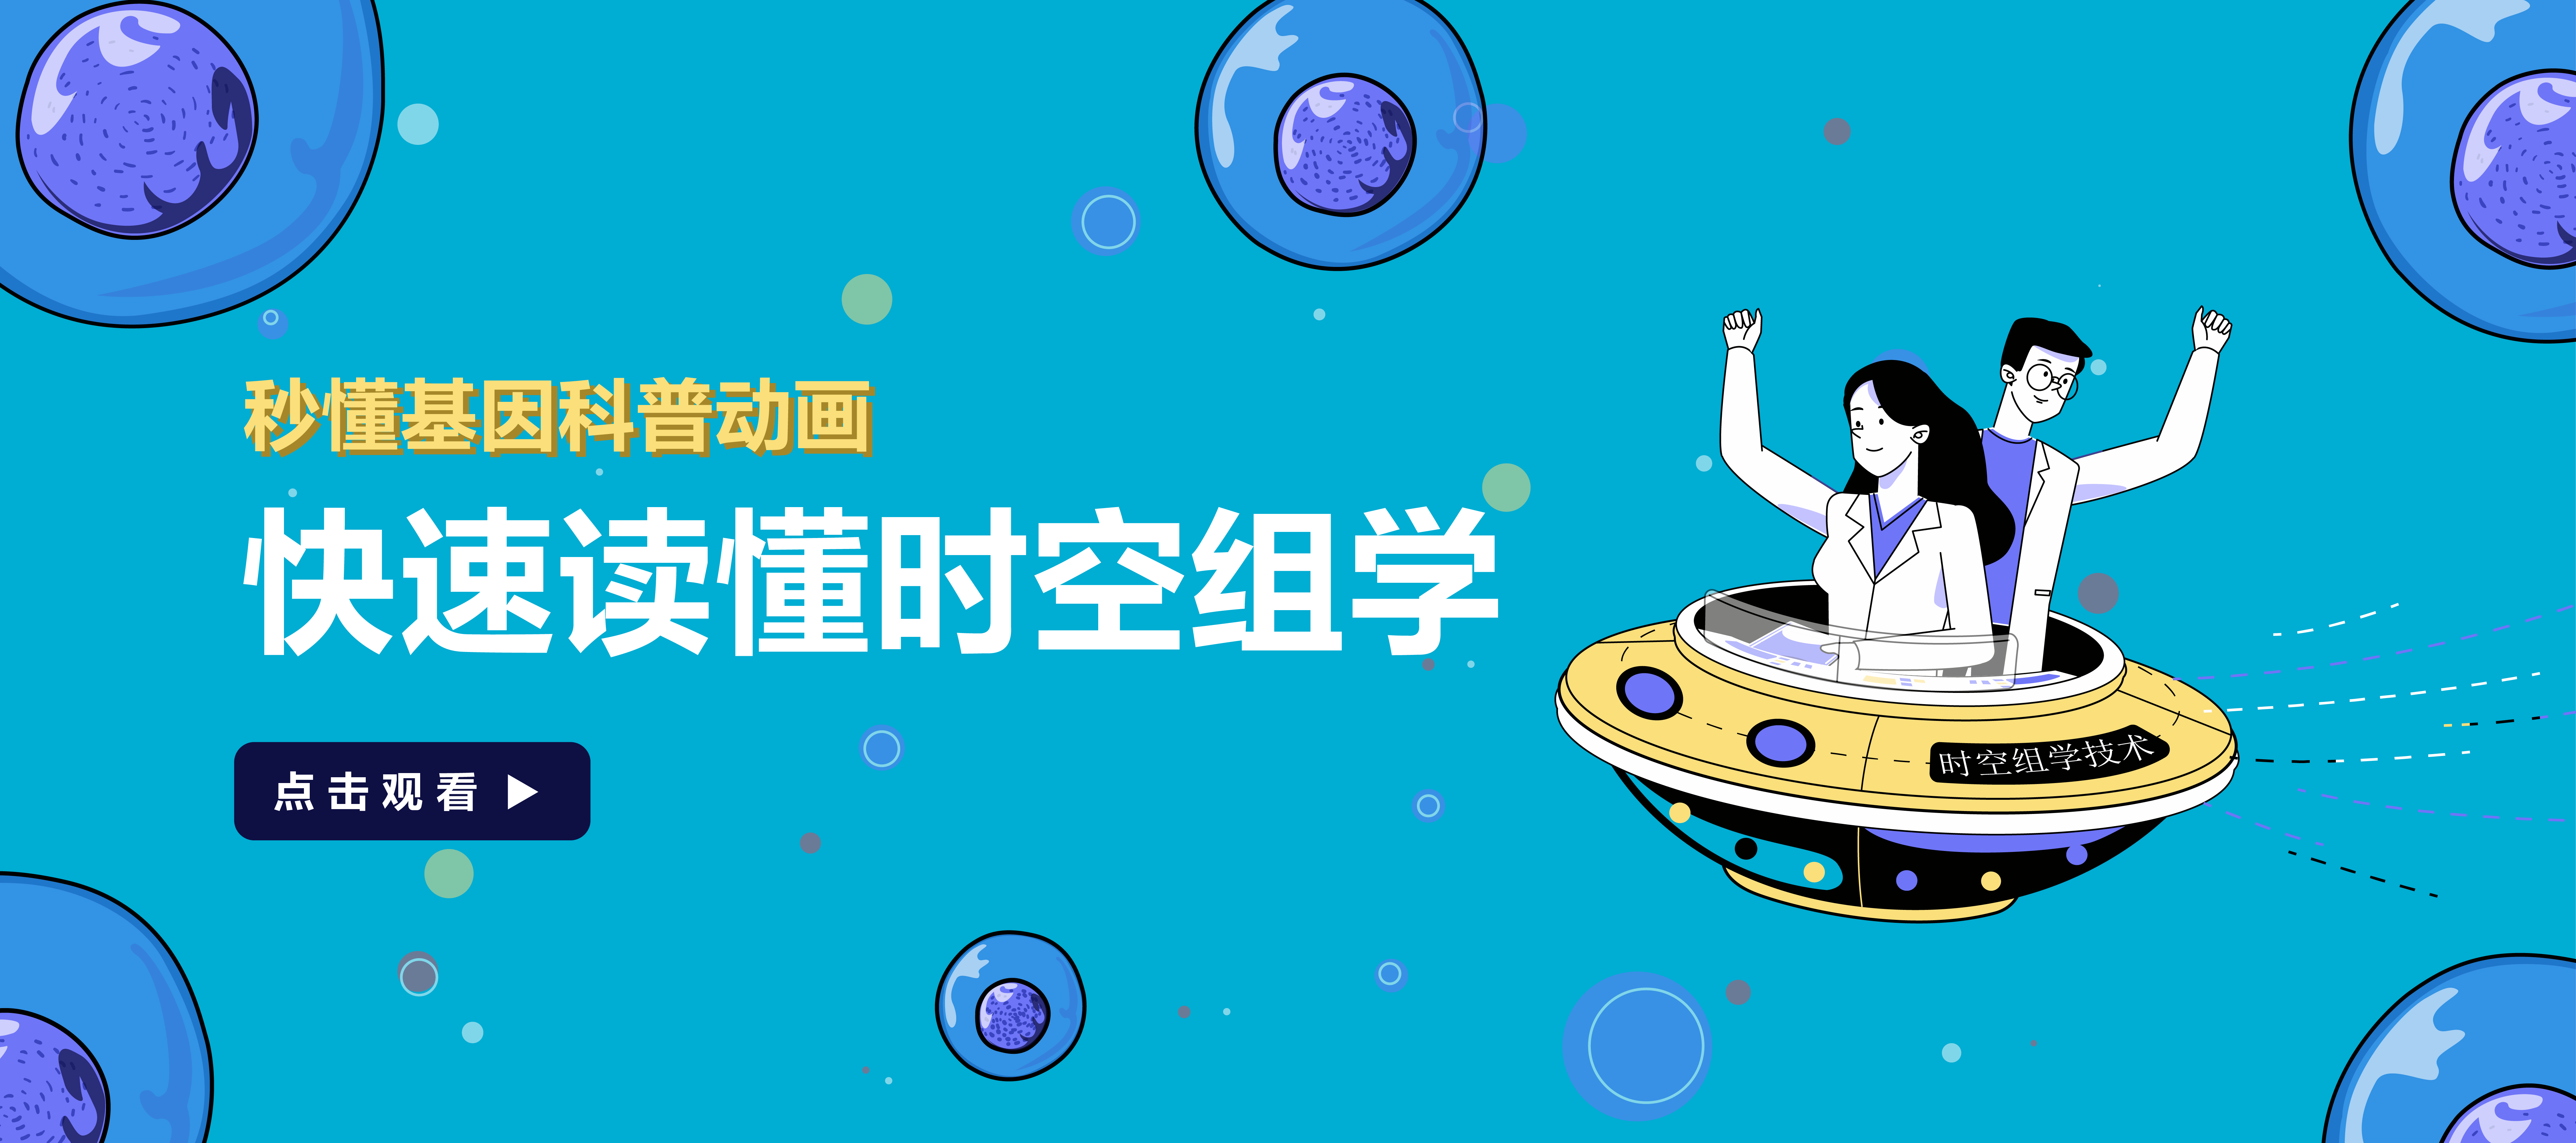 乐鱼app官方网站入口首页banner [已恢复]_画板 1.png